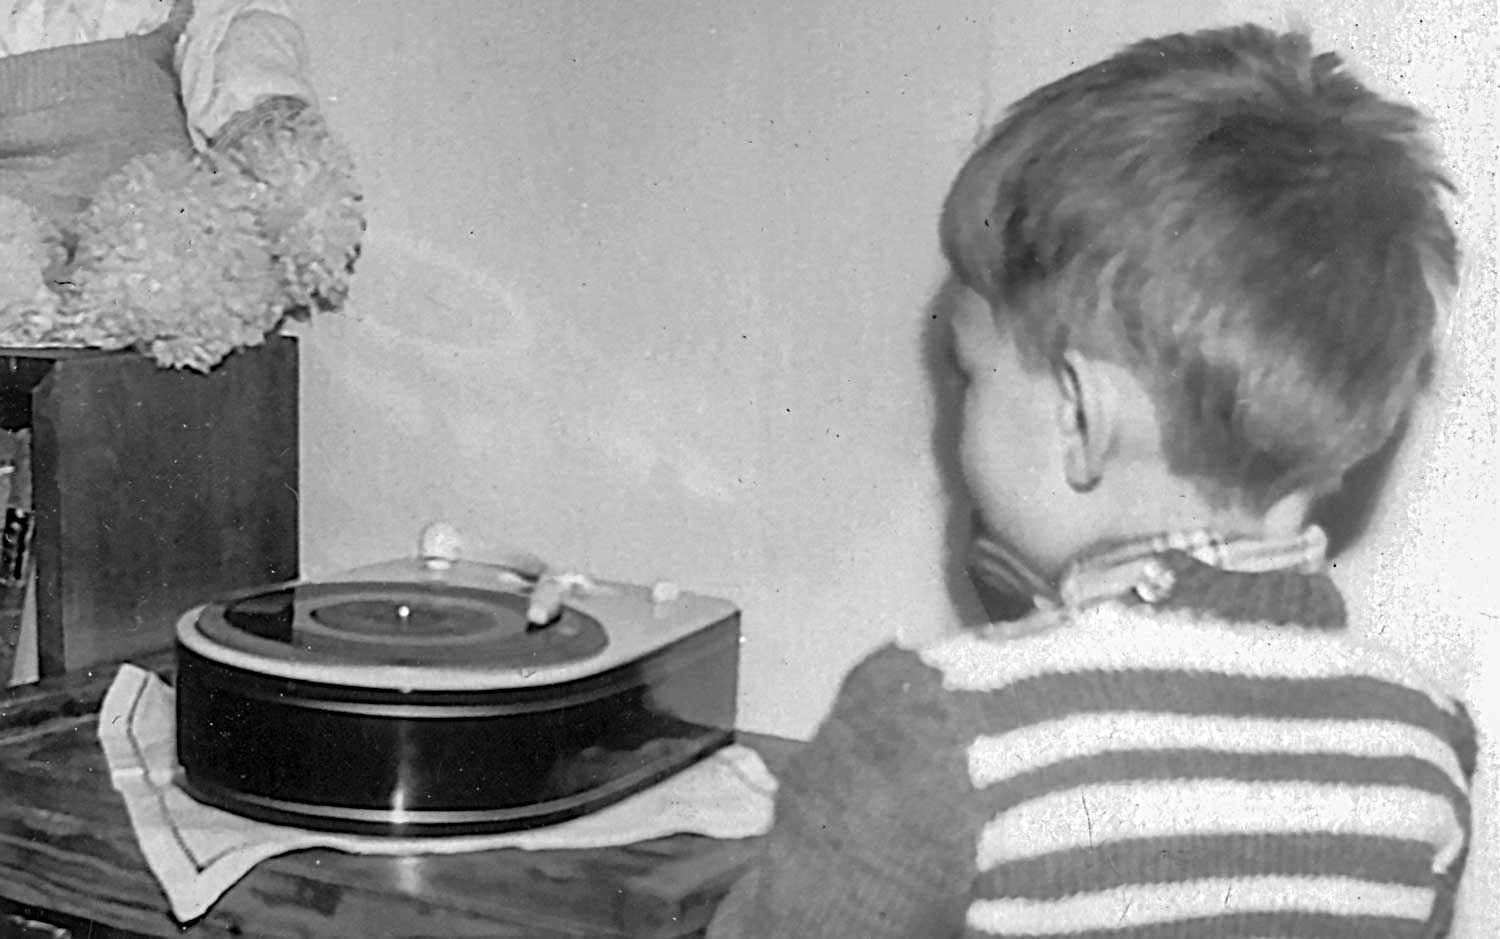 Arnfinn ved grammofonen, 3 år gammel.